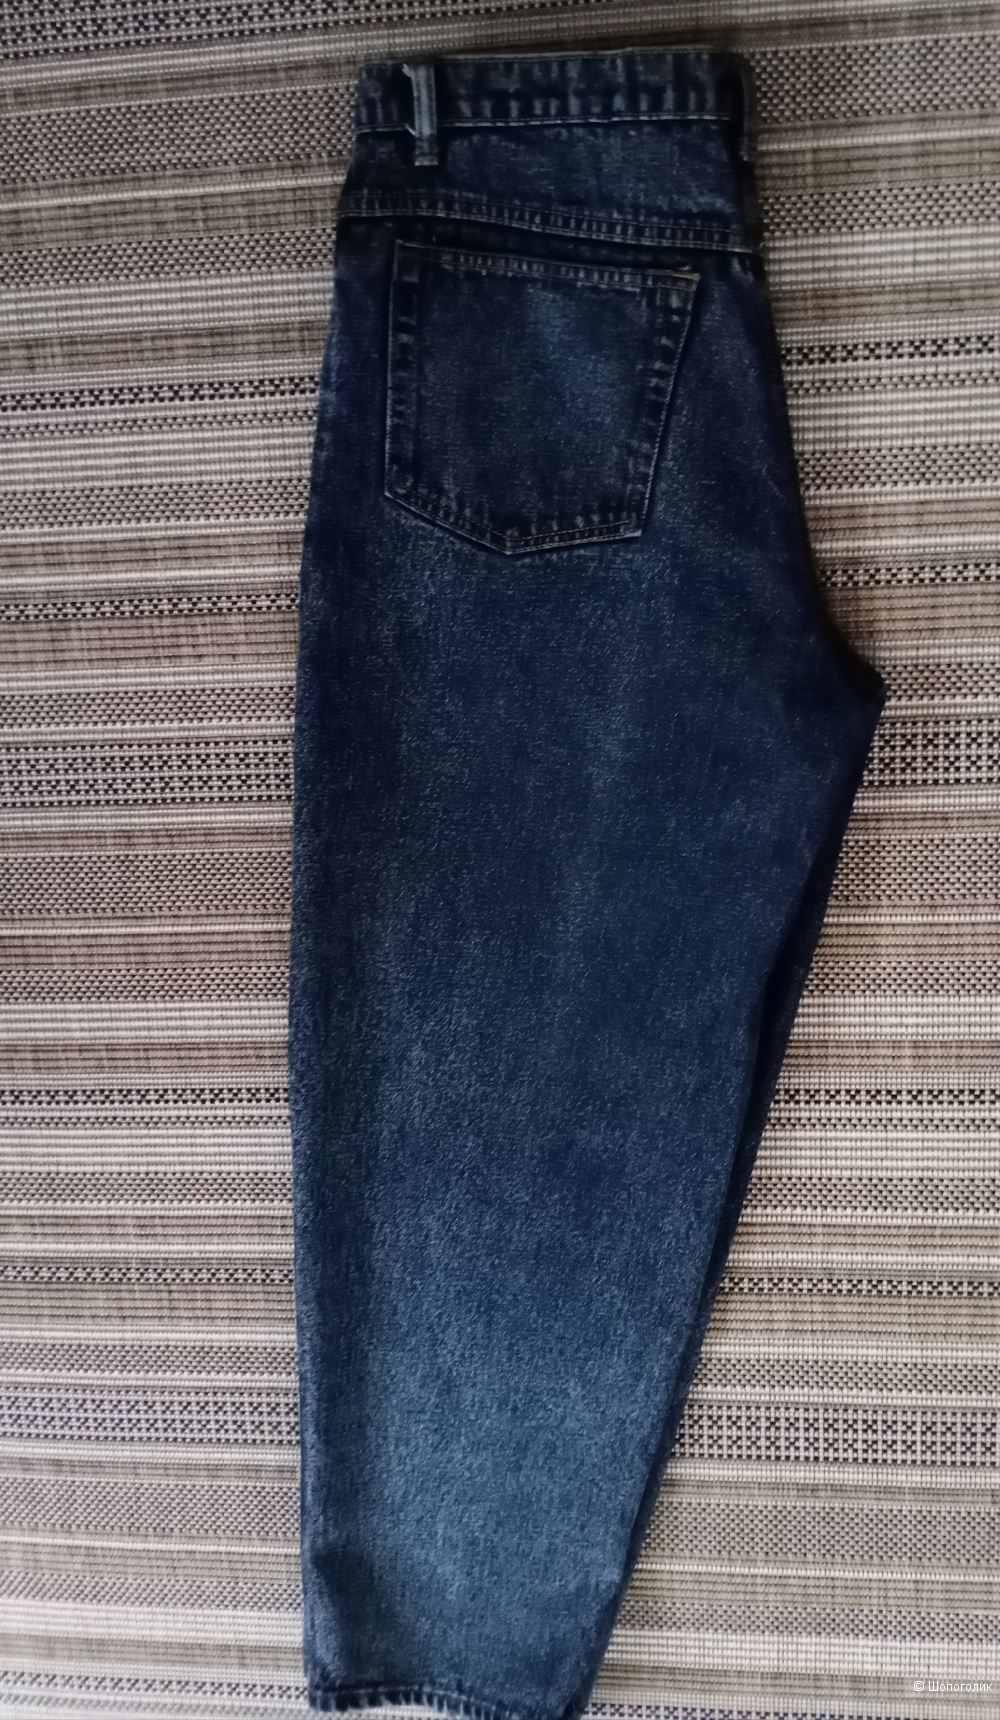 Джинсы Cusco jeans, 50-52  размер